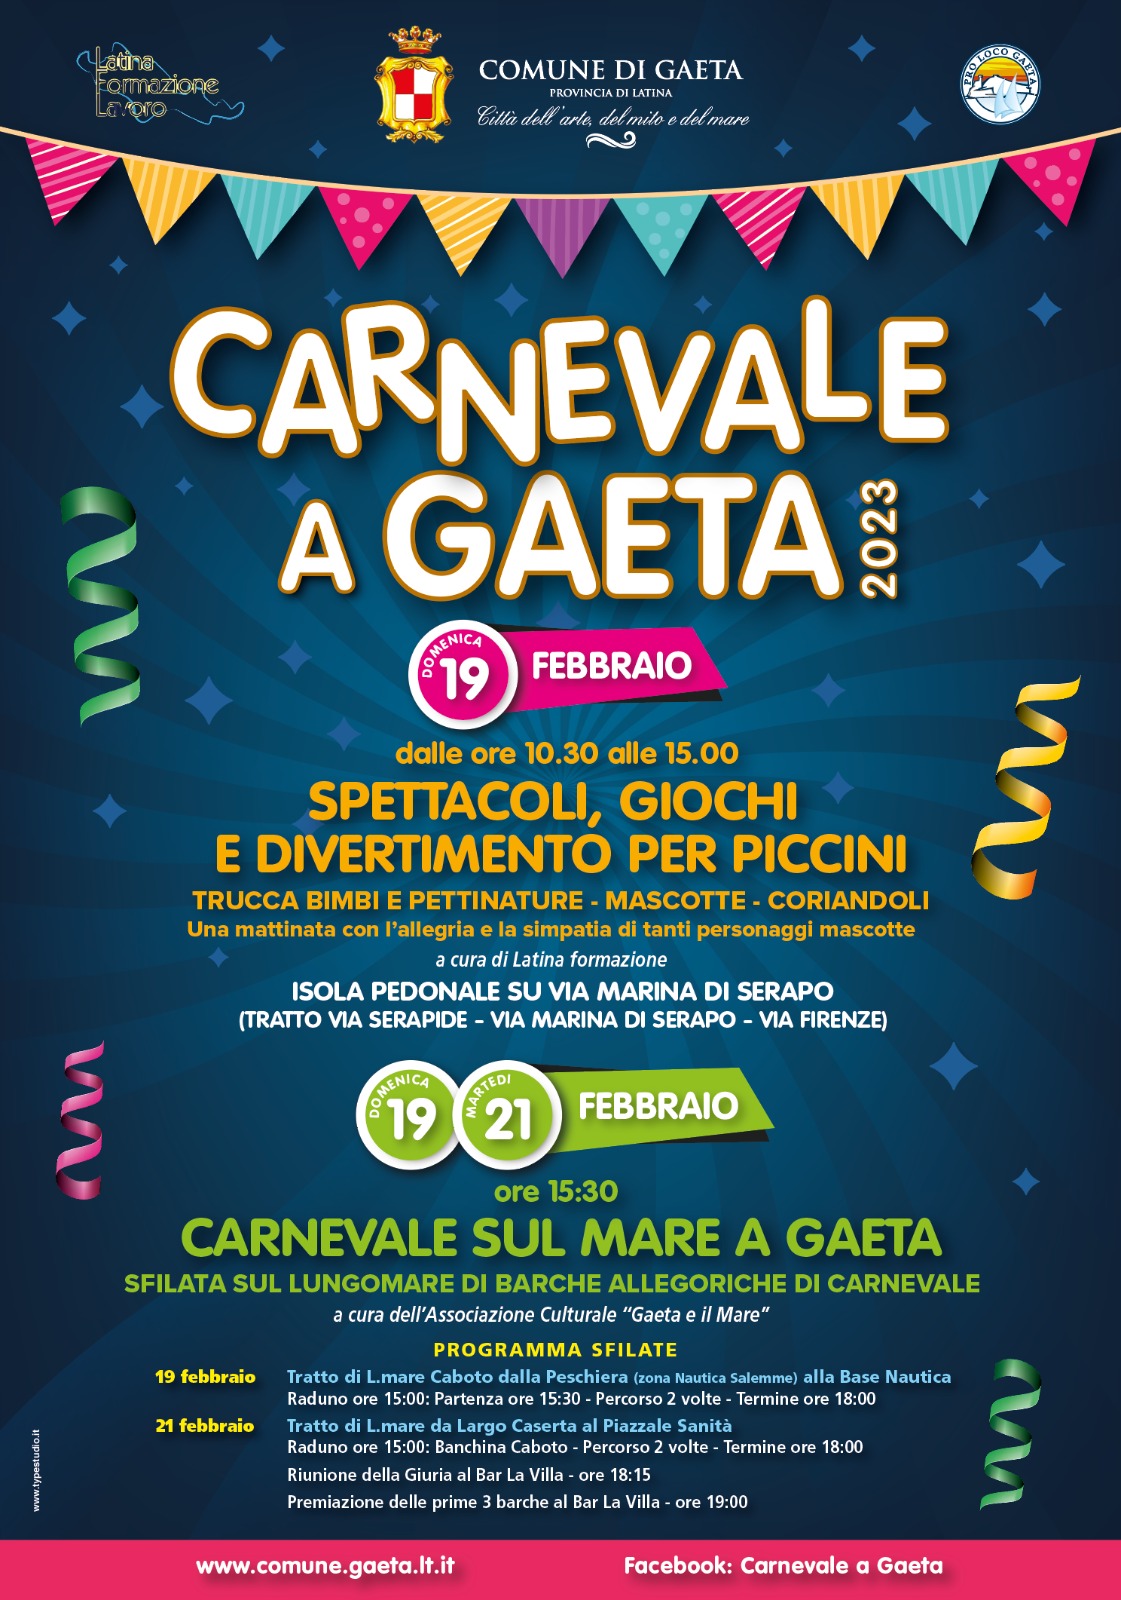 Tutto pronto a Gaeta per festeggiare il Carnevale 2023!